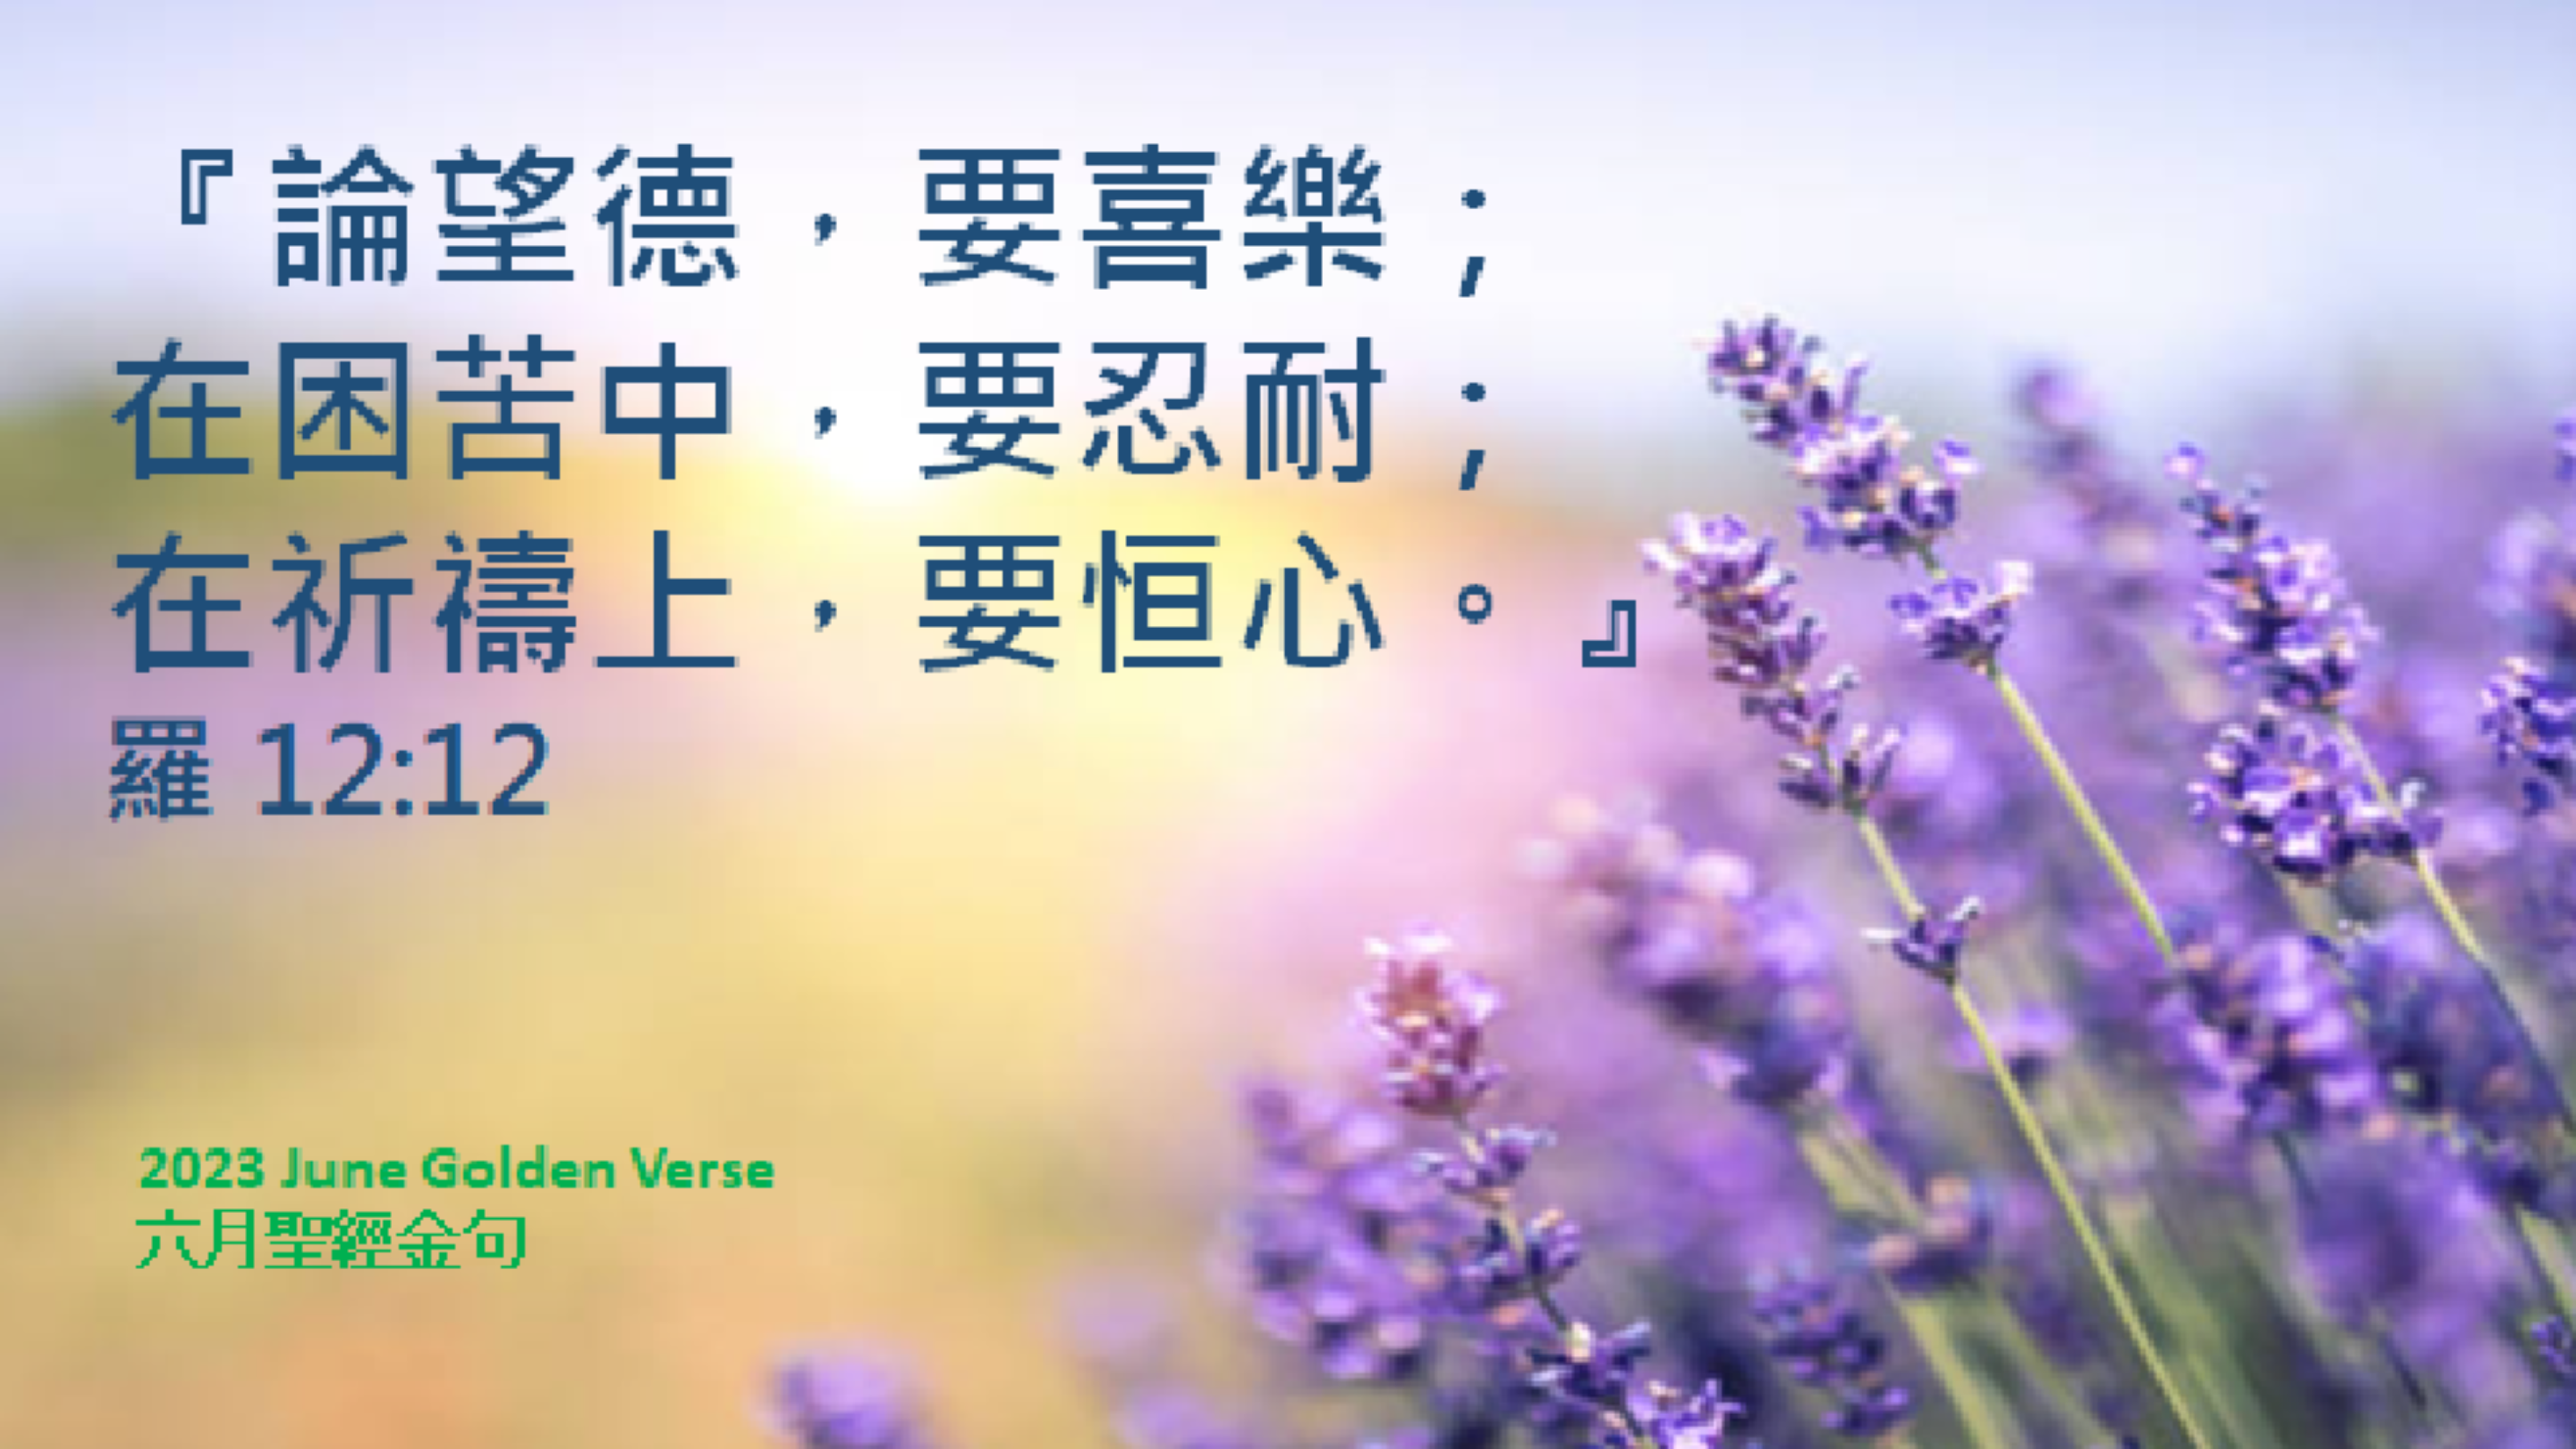 Golden-verse-202306-cn.jpg